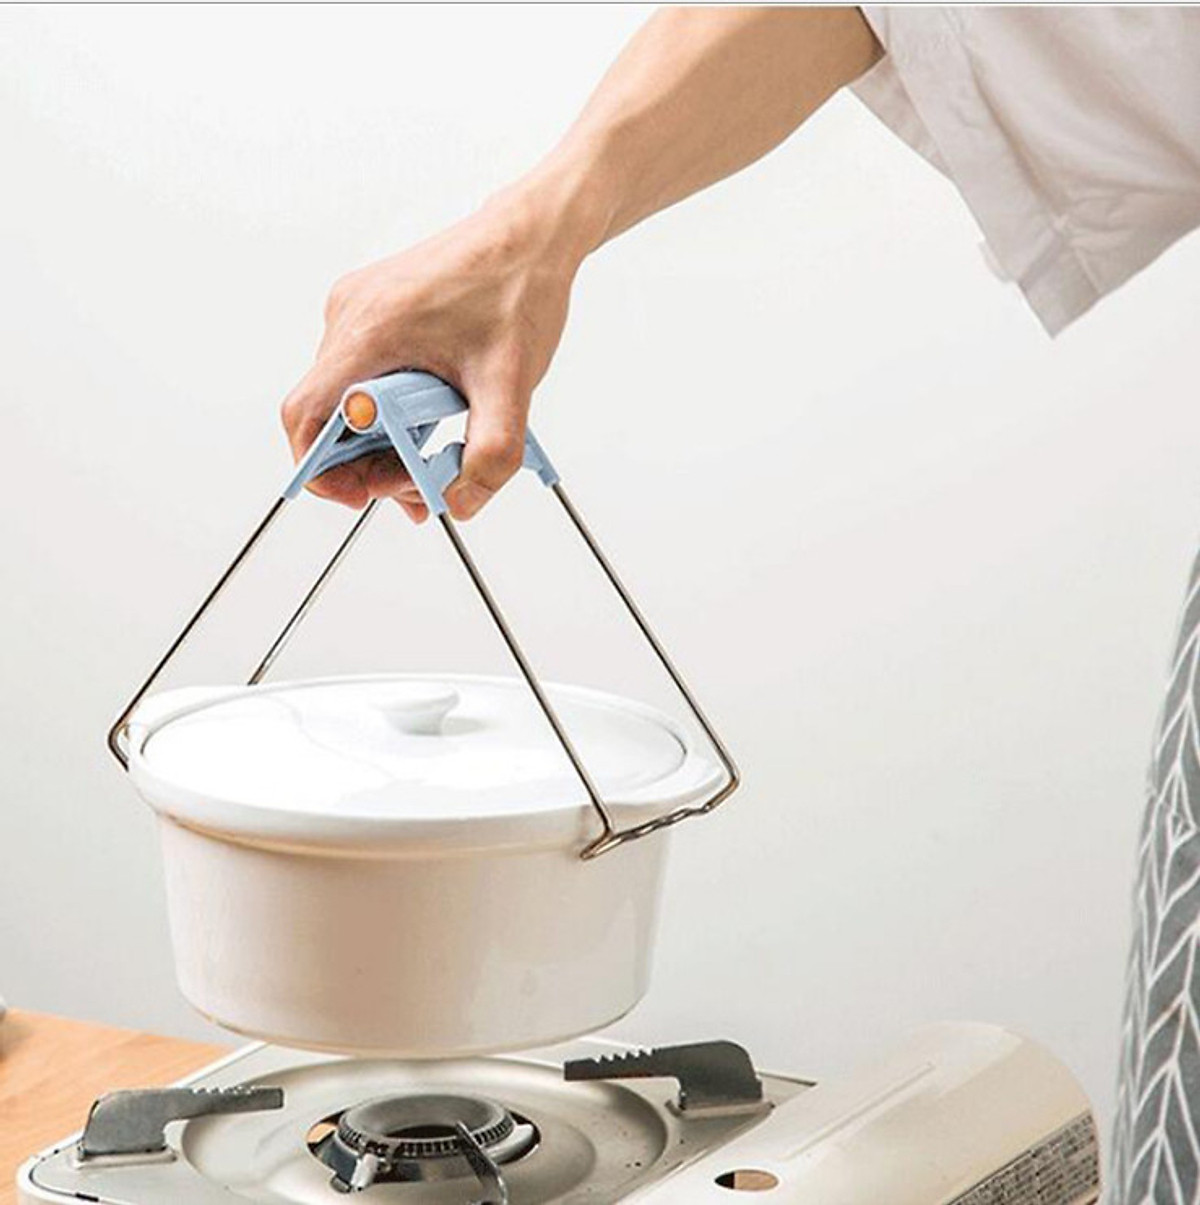 Dụng cụ kẹp gắp bát đĩa chống nóng thông minh, khay inox kẹp đồ nóng nhà bếp đa năng - GIAO MÀU NGẪU NHIÊN - Hàng Chính Hãng